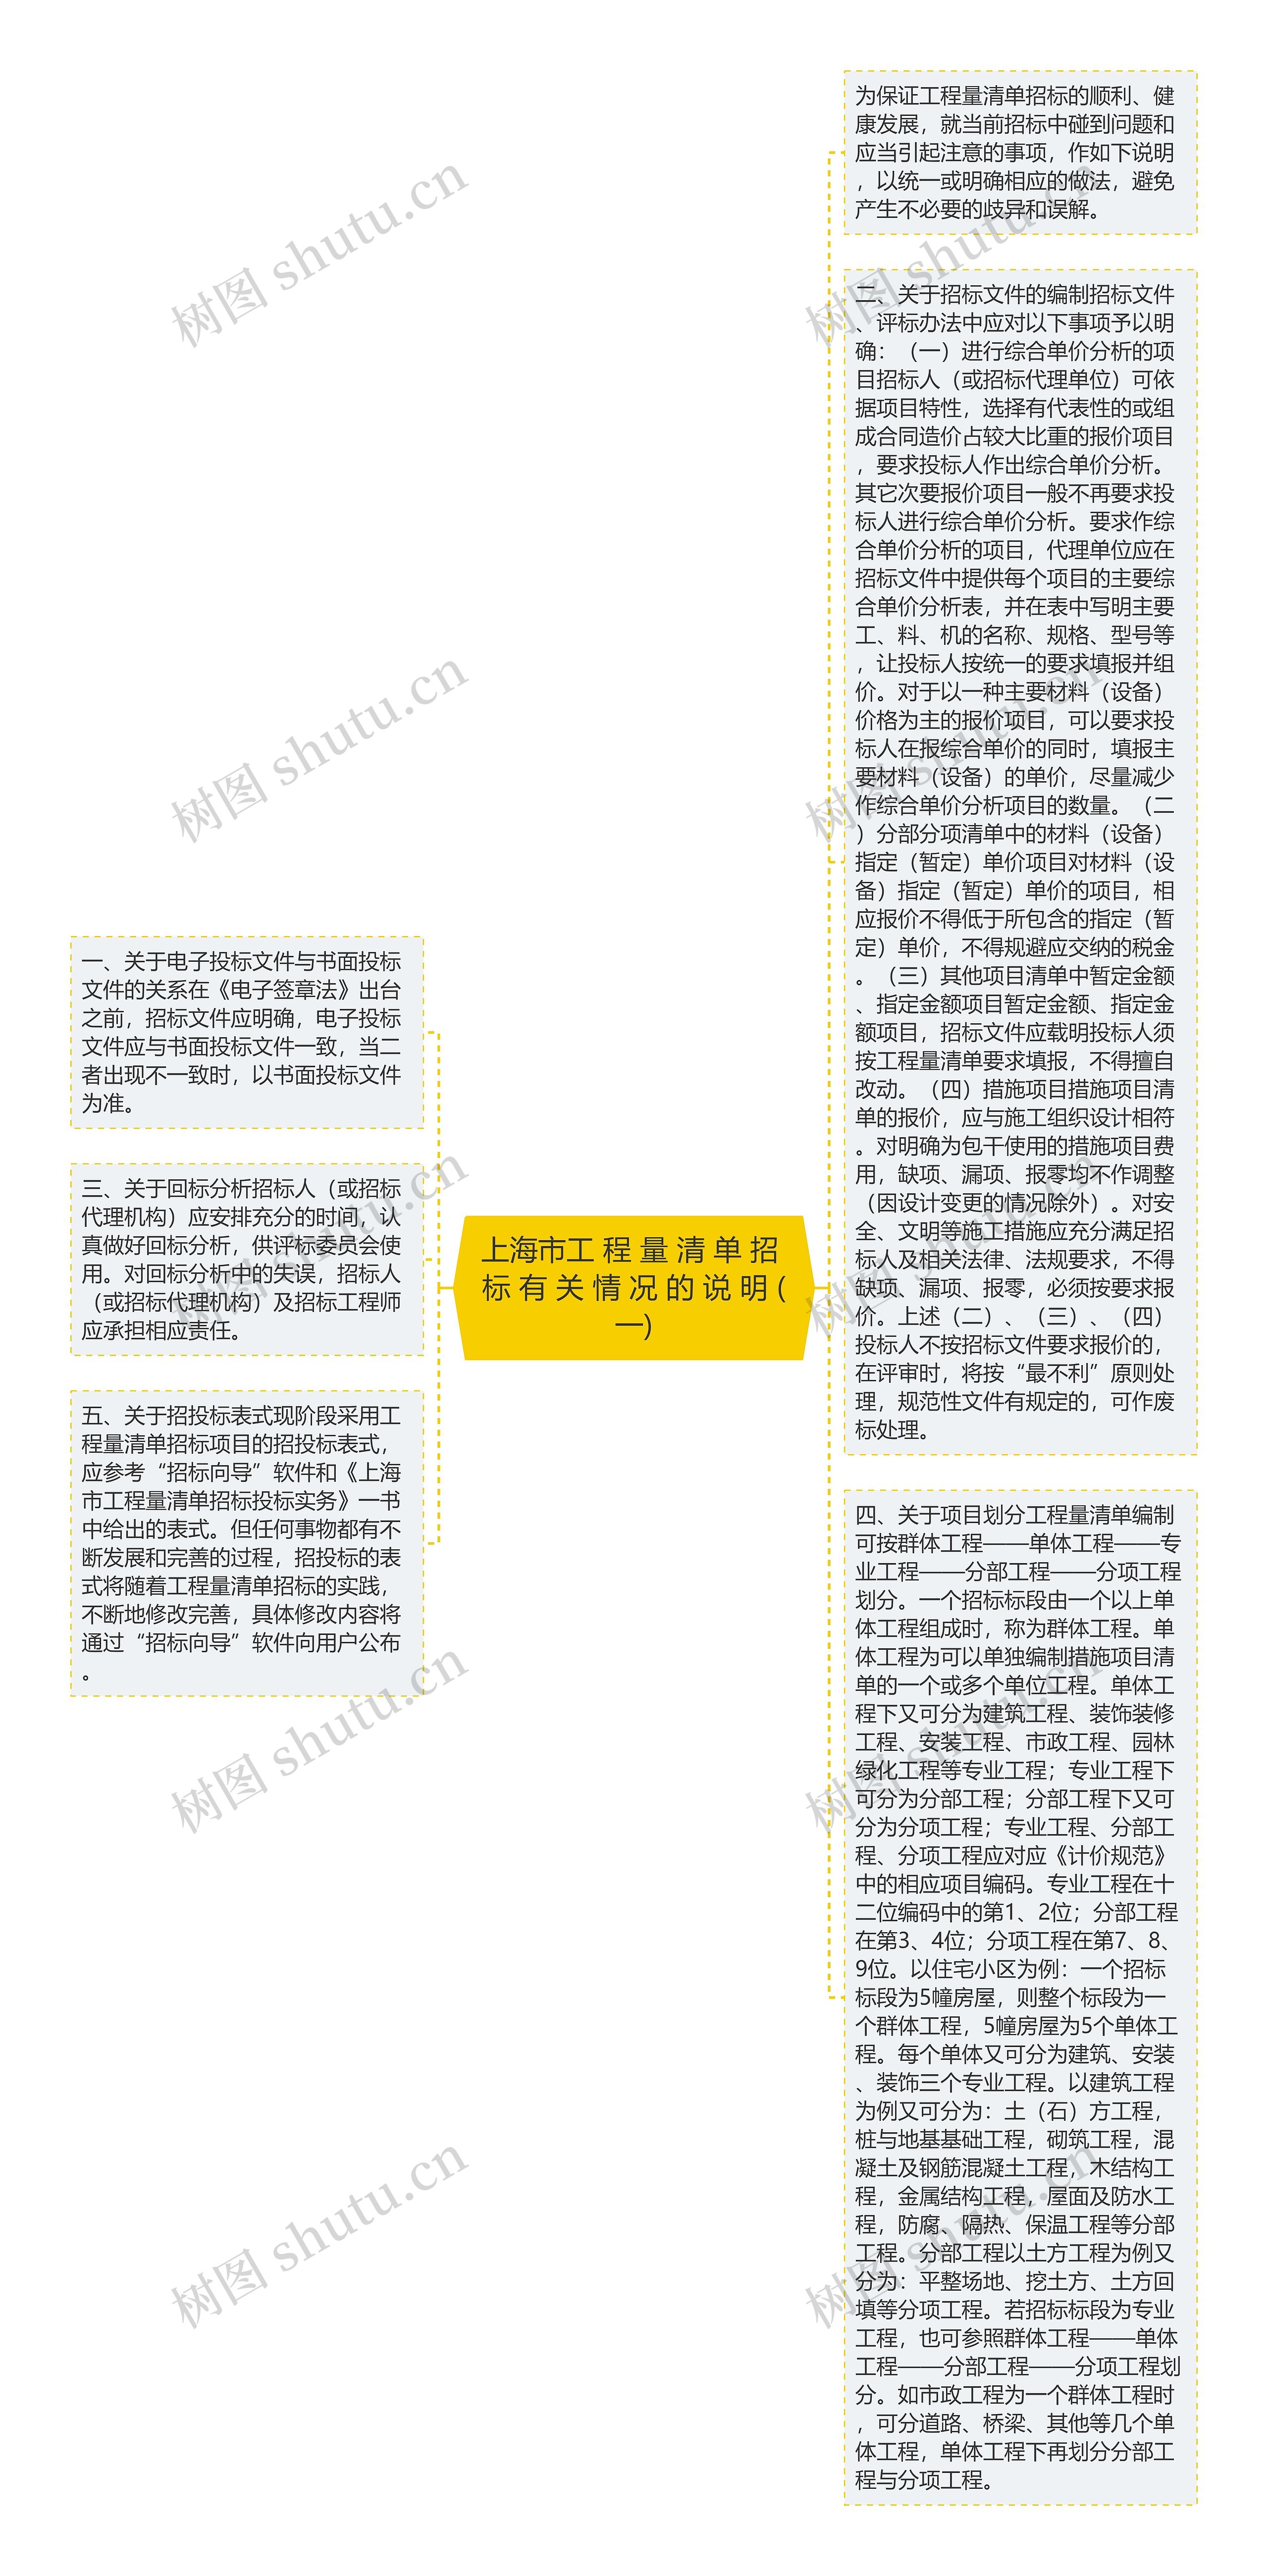 上海市工 程 量 清 单 招 标 有 关 情 况 的 说 明 (一)